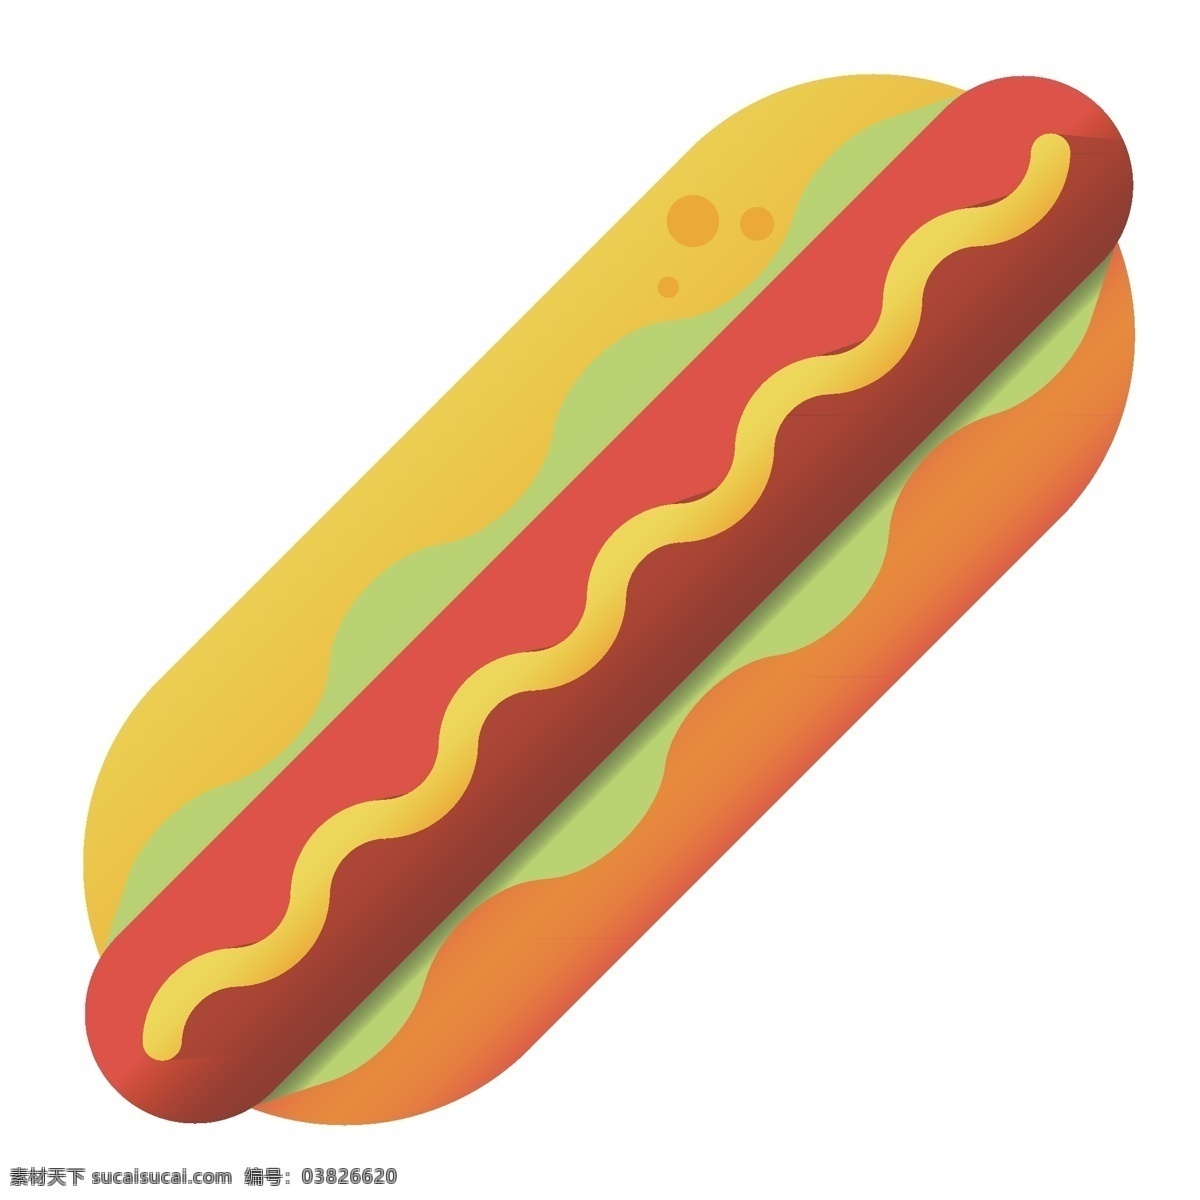 夹心 热狗 图案 插图 红色香肠 长长的香肠 黄色面包 黄色酱料 绿色蔬菜 有机蔬菜 好吃的热狗 美丽的热狗